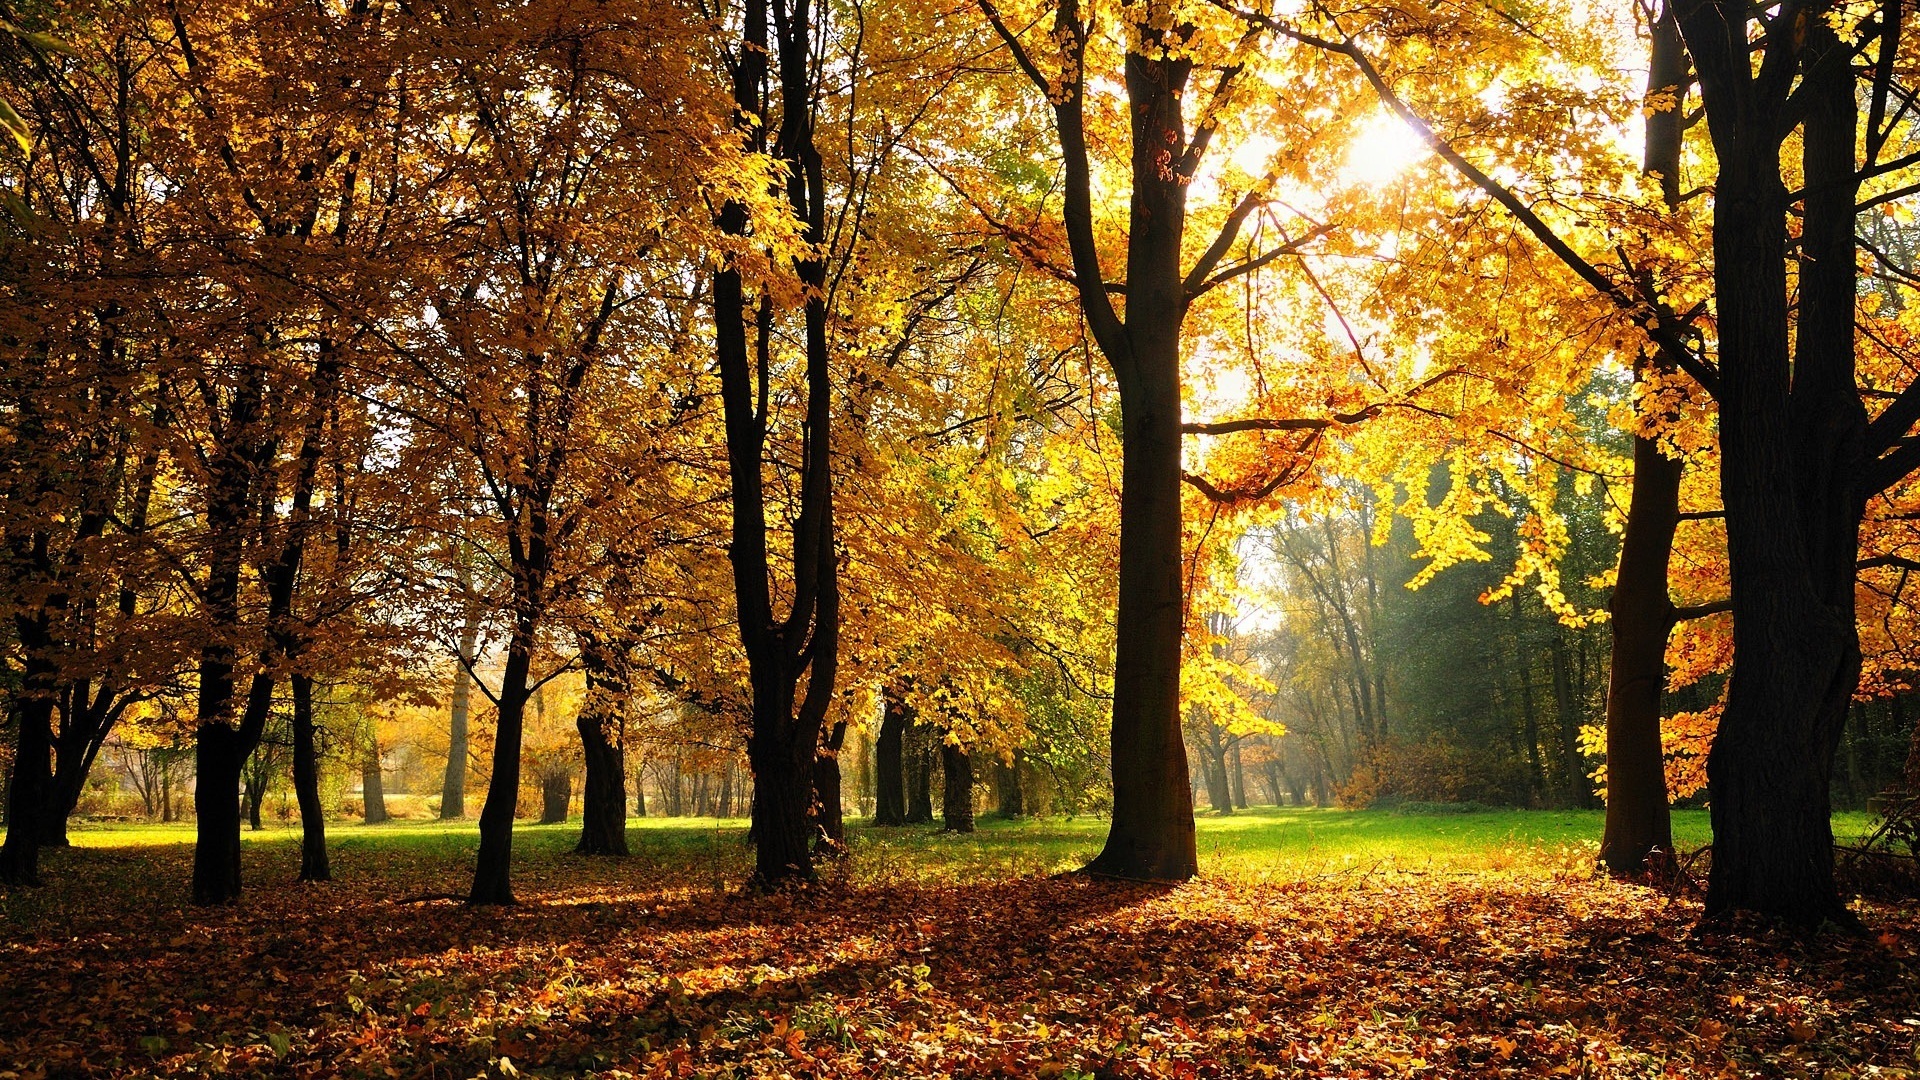 森林公园,黄色的秋天,树叶,阳光,风景桌面壁纸